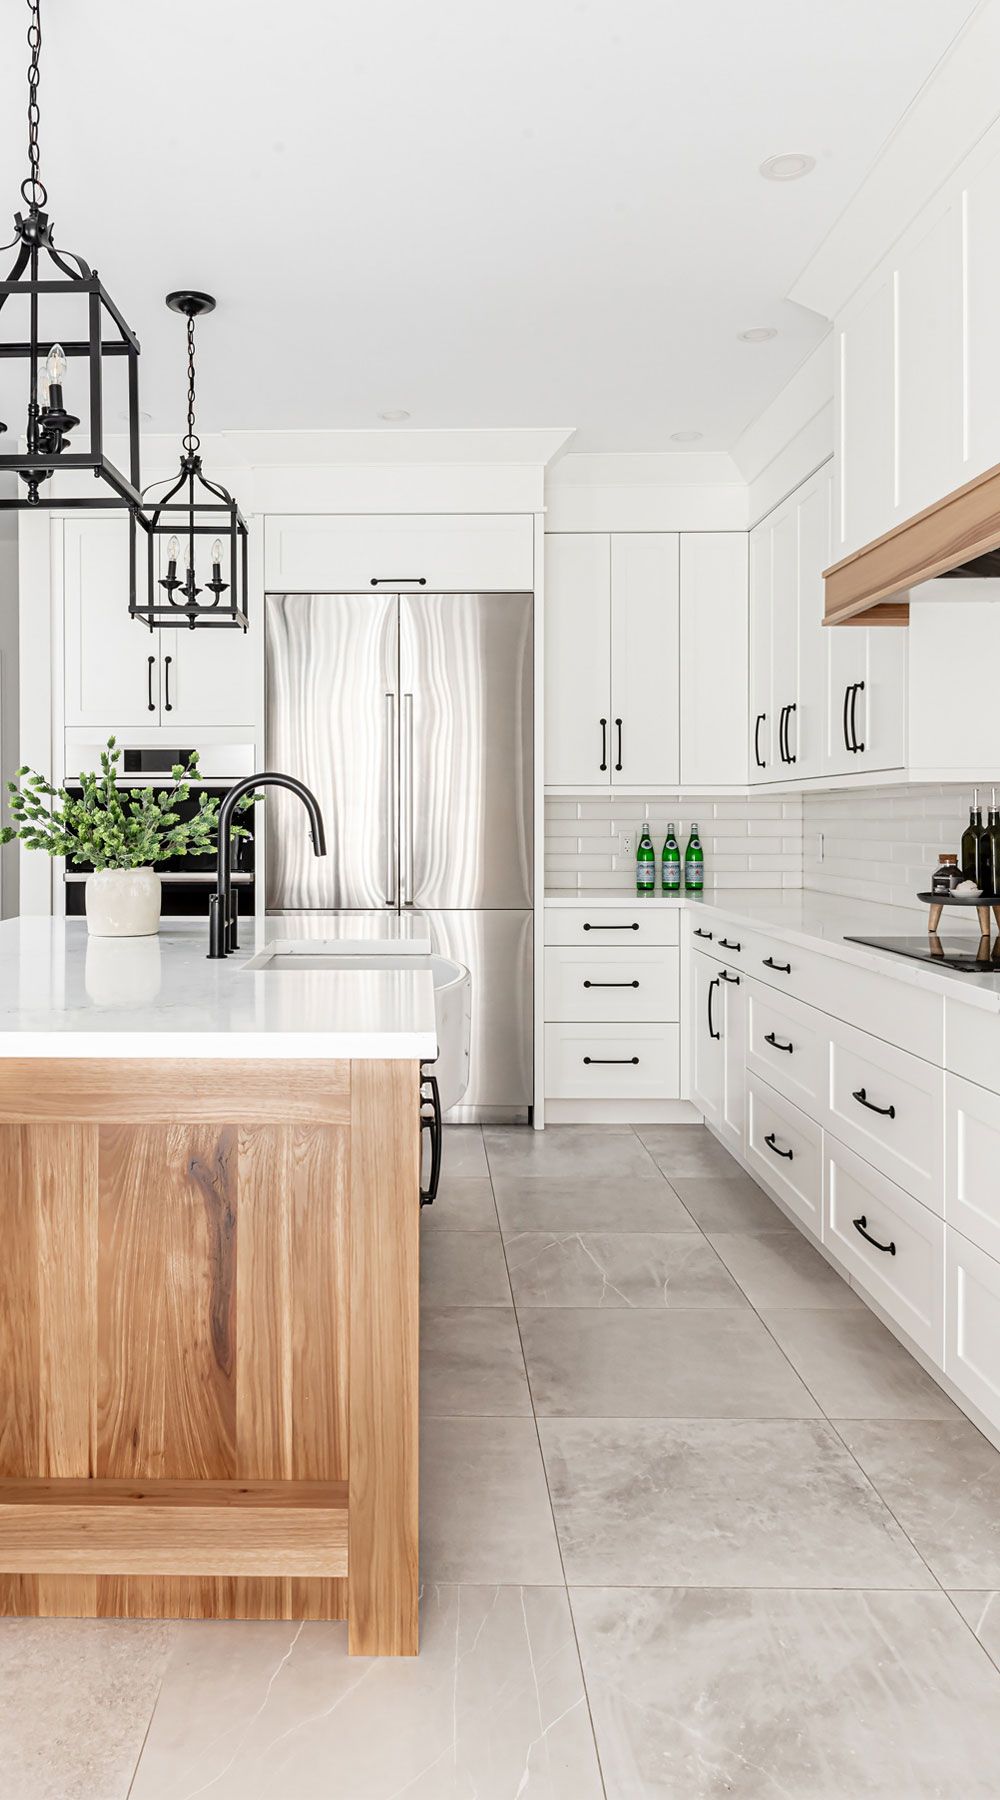 Stunning White Kitchen Ideas to
Brighten Up Your Space